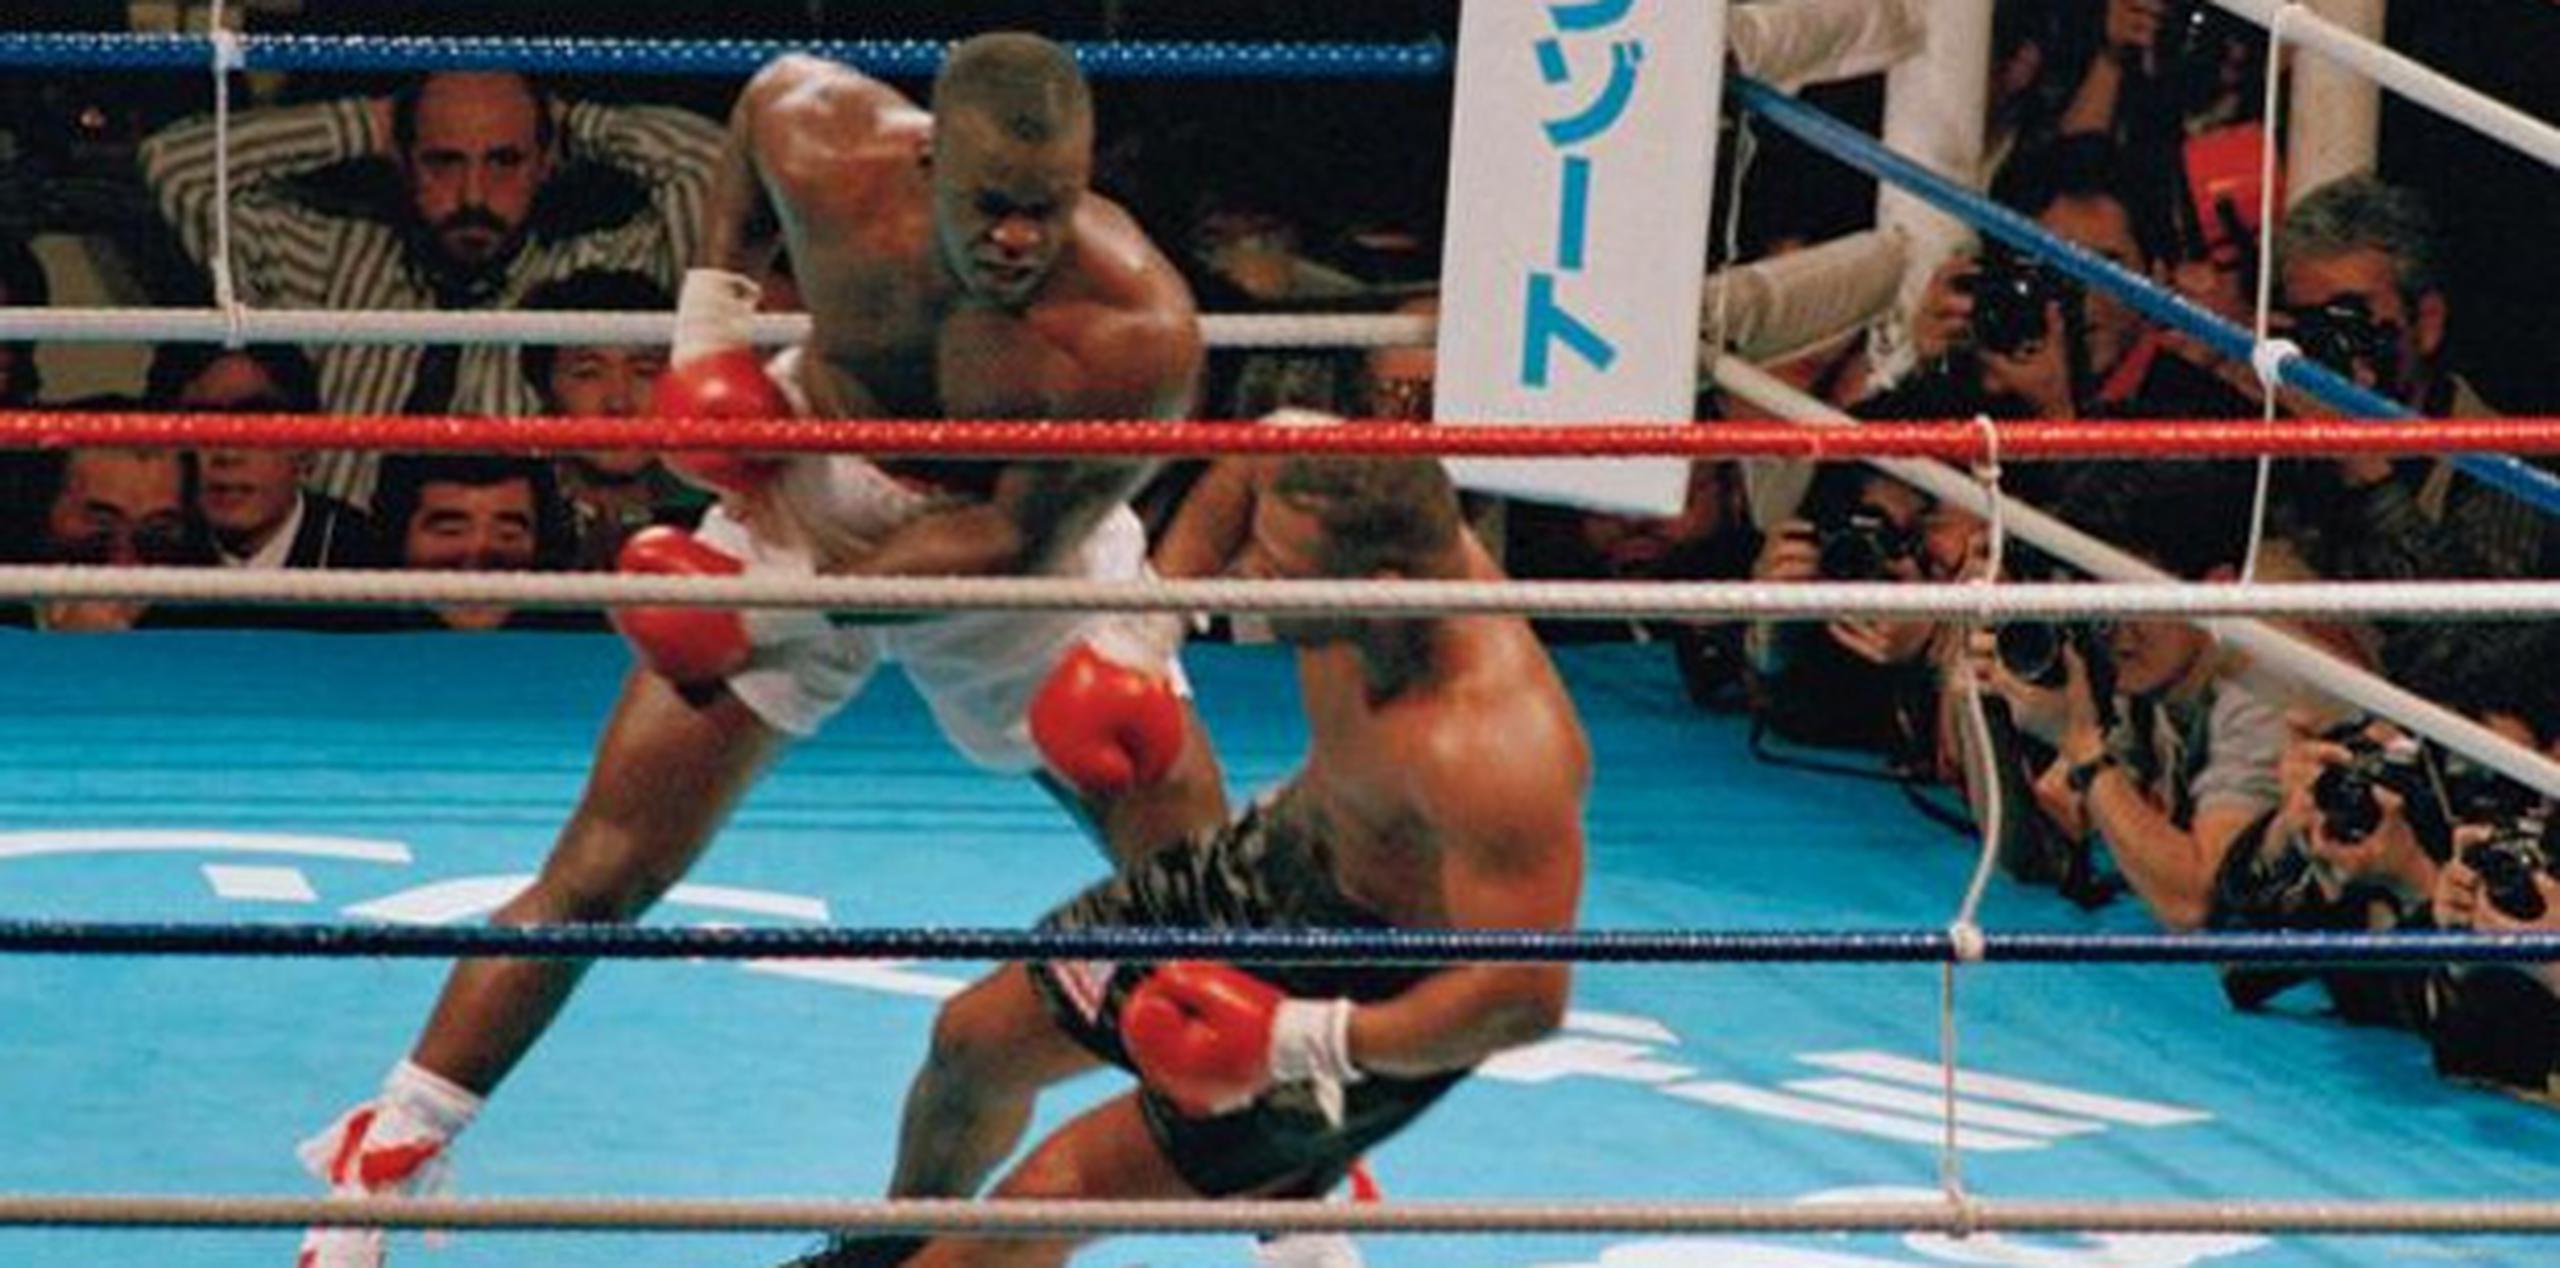 Tyson entró al desafío contra Douglas con marca de 37-0, con 30 nocauts.